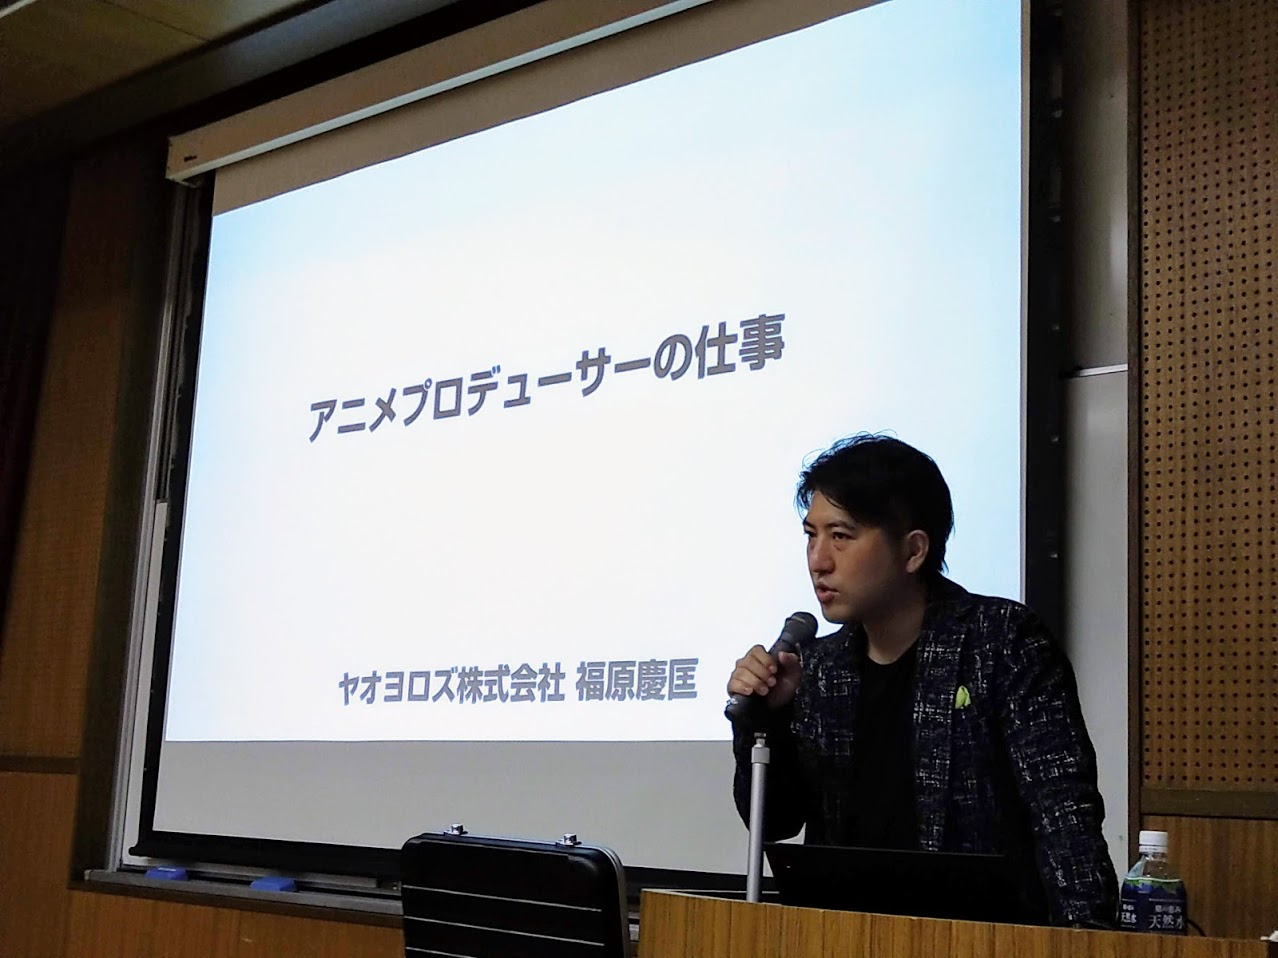 アニメプロデュースに関するゲスト講義が行われました 敬和学園大学 新潟県新発田市にあるリベラルアーツ大学